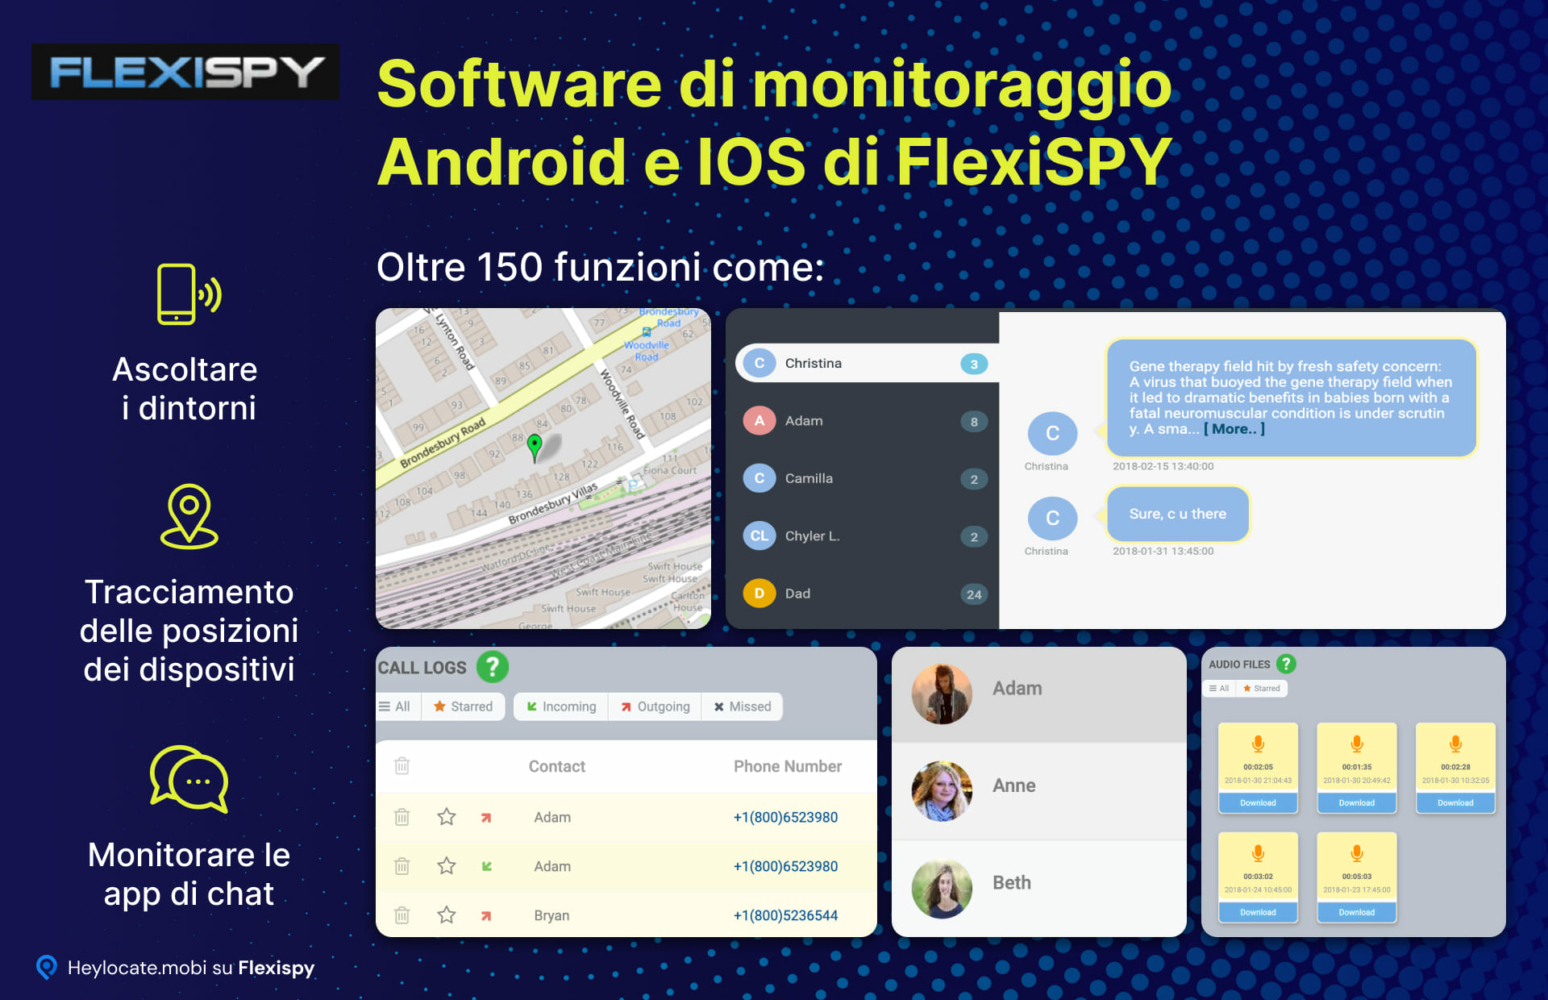 Una panoramica delle funzioni di monitoraggio di FlexiSPY per i dispositivi Android e iOS, evidenziando funzionalità come l'ascolto dell'ambiente circostante, il tracciamento della posizione del dispositivo e il monitoraggio di varie applicazioni di chat, con esempi visivi dell'interfaccia del software.